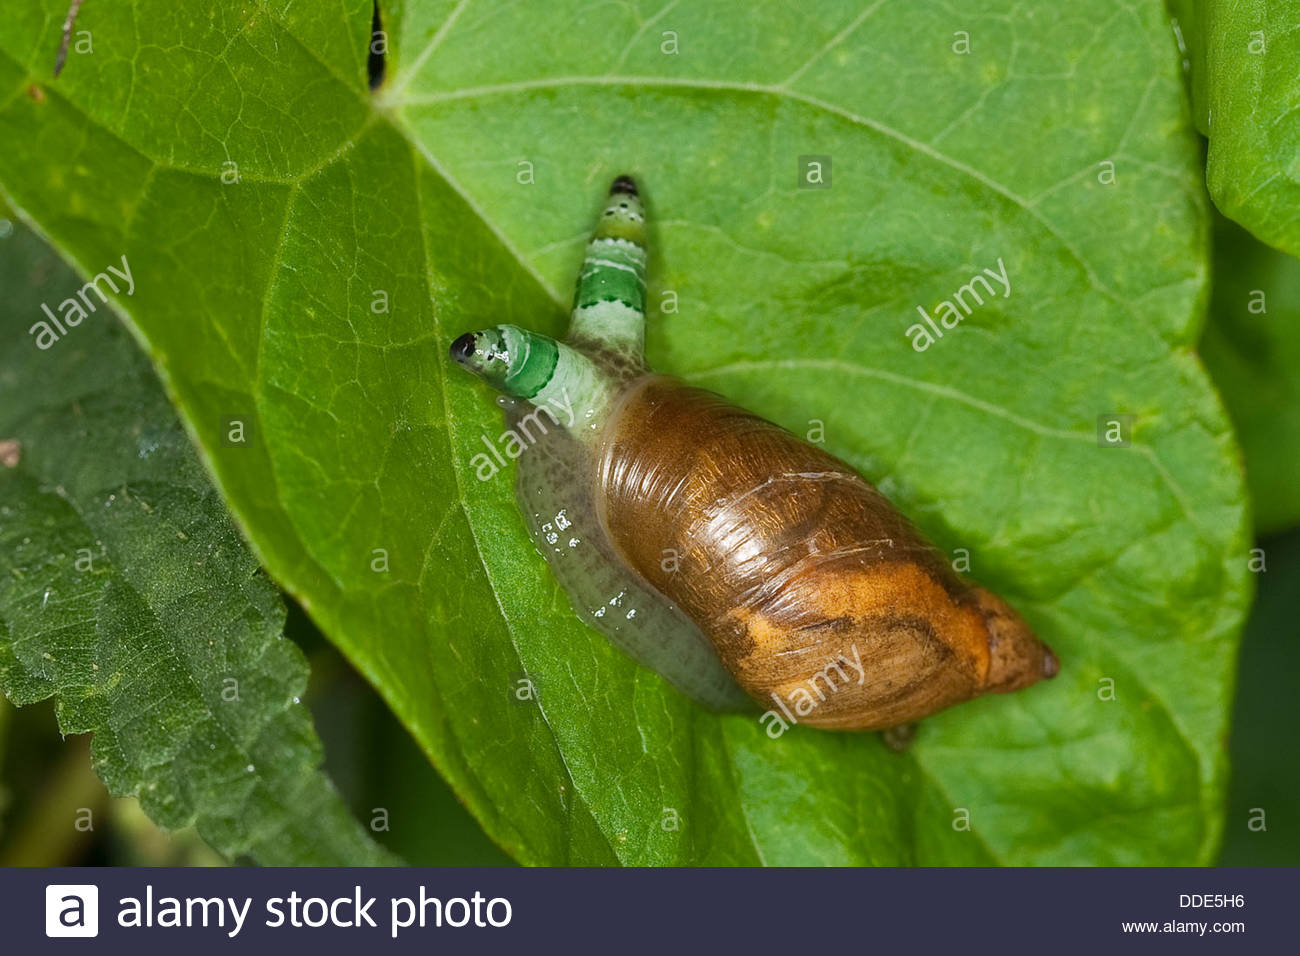 amber-snail-ambersnail-green-banded-broodsac-bernsteinschnecke-succinea-DDE5H6.jpg